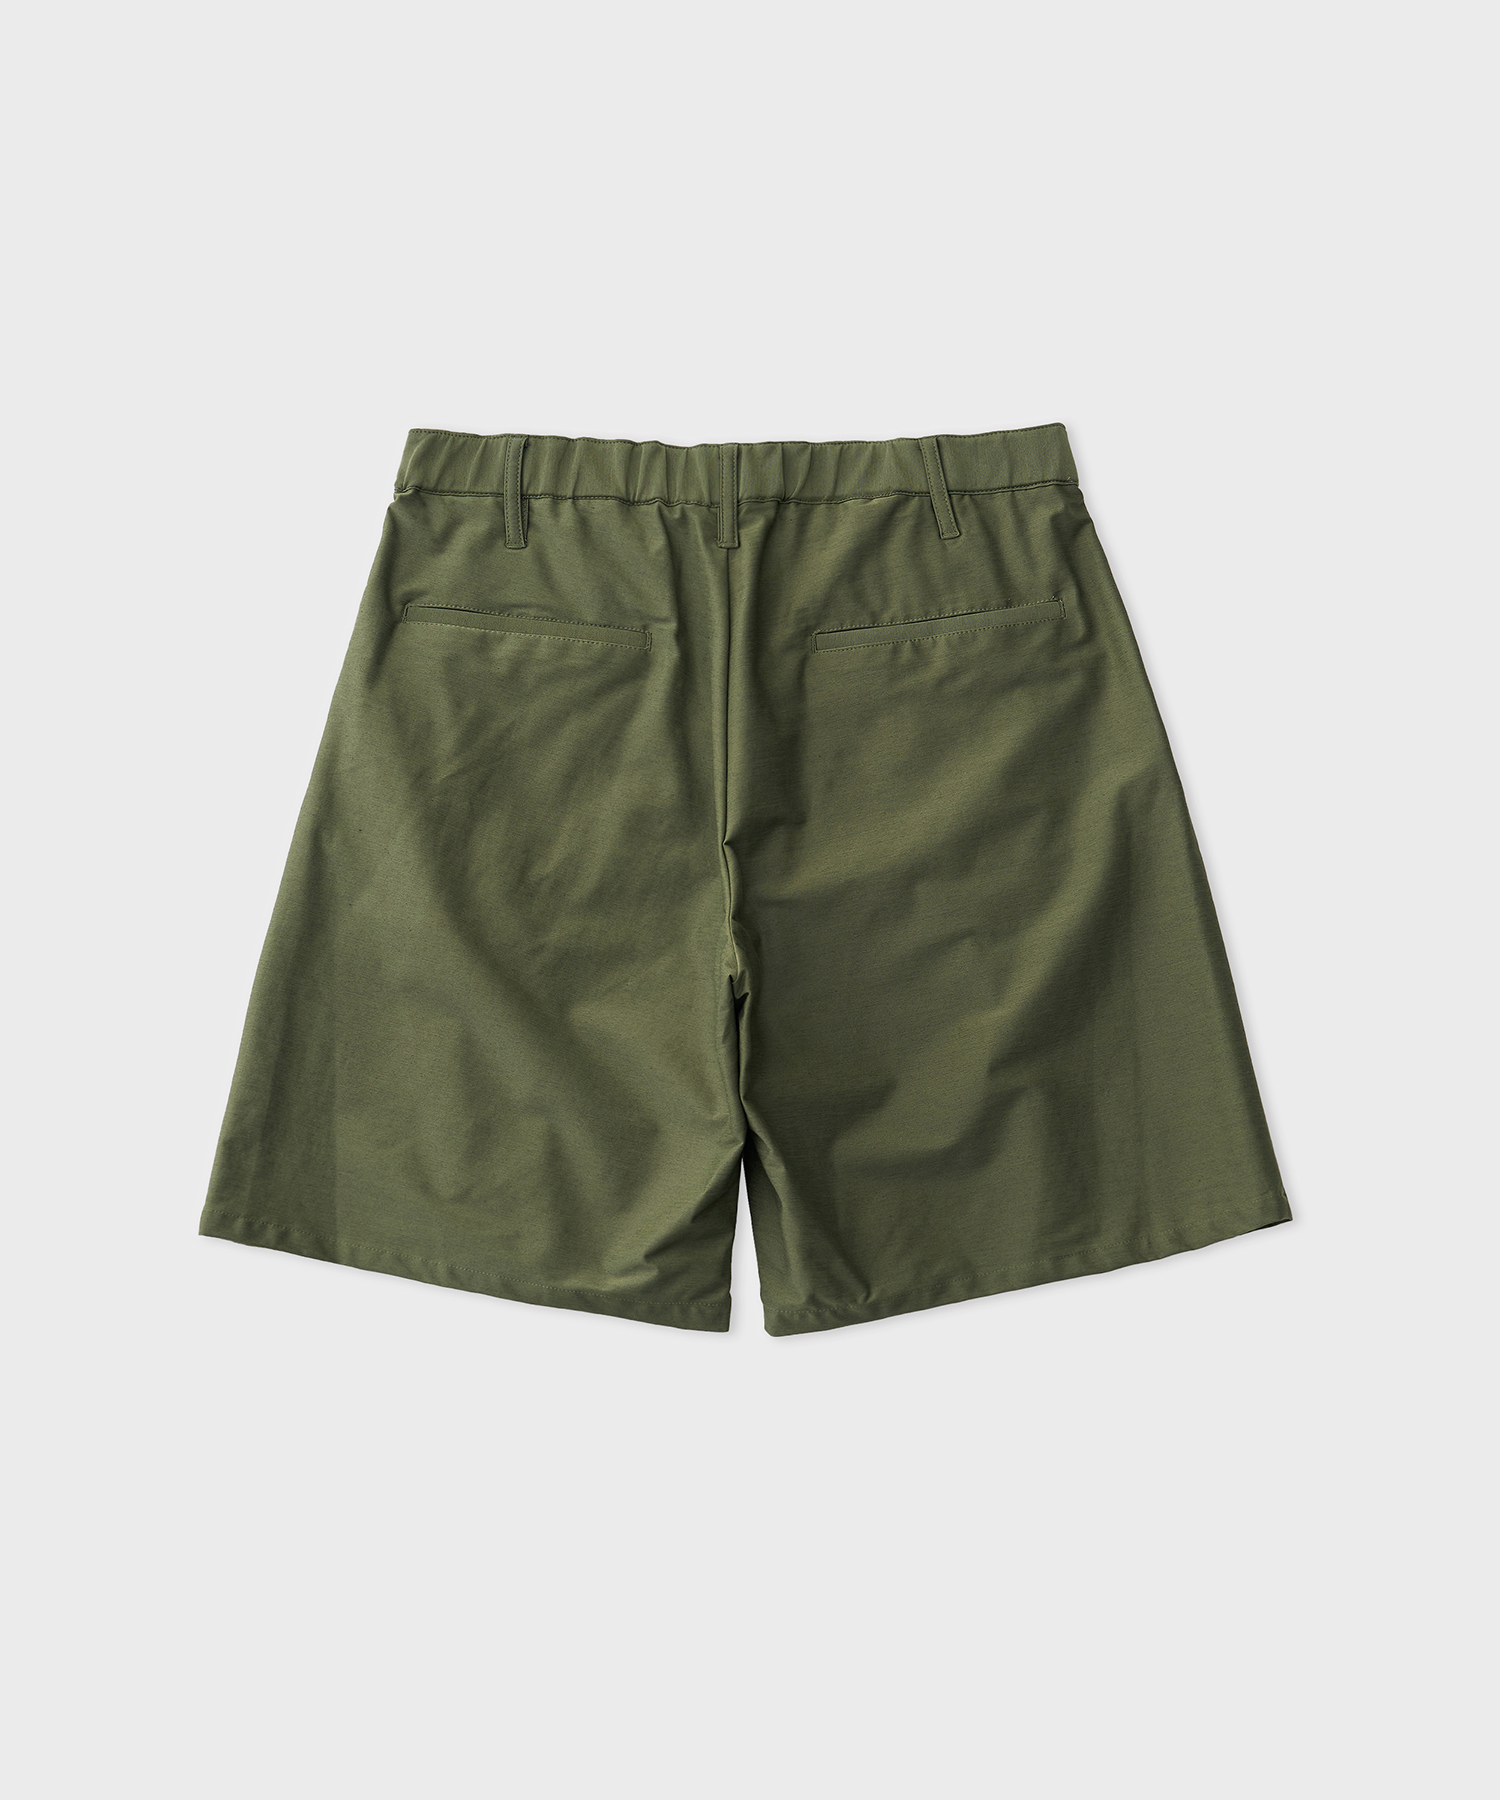 Typewriter High Gauge Jersey Tuck shorts (Military Green)